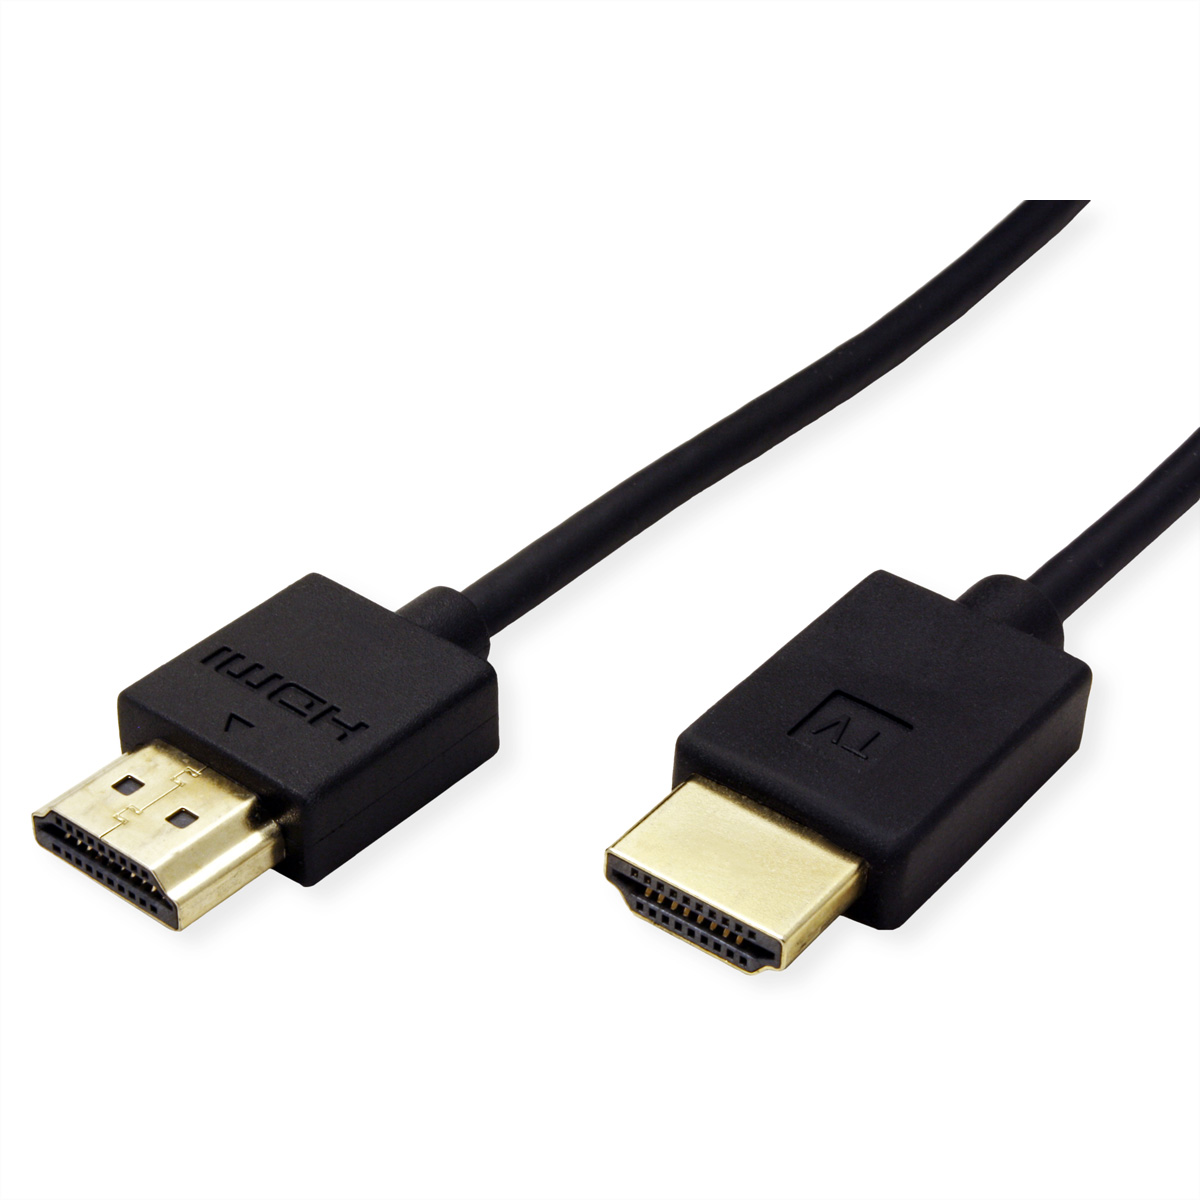 Kabel HD ST/ST Ultra aktiv, Ethernet Ethernet, HDMI Ultra 4K ROLINE mit HDMI HD mit Kabel